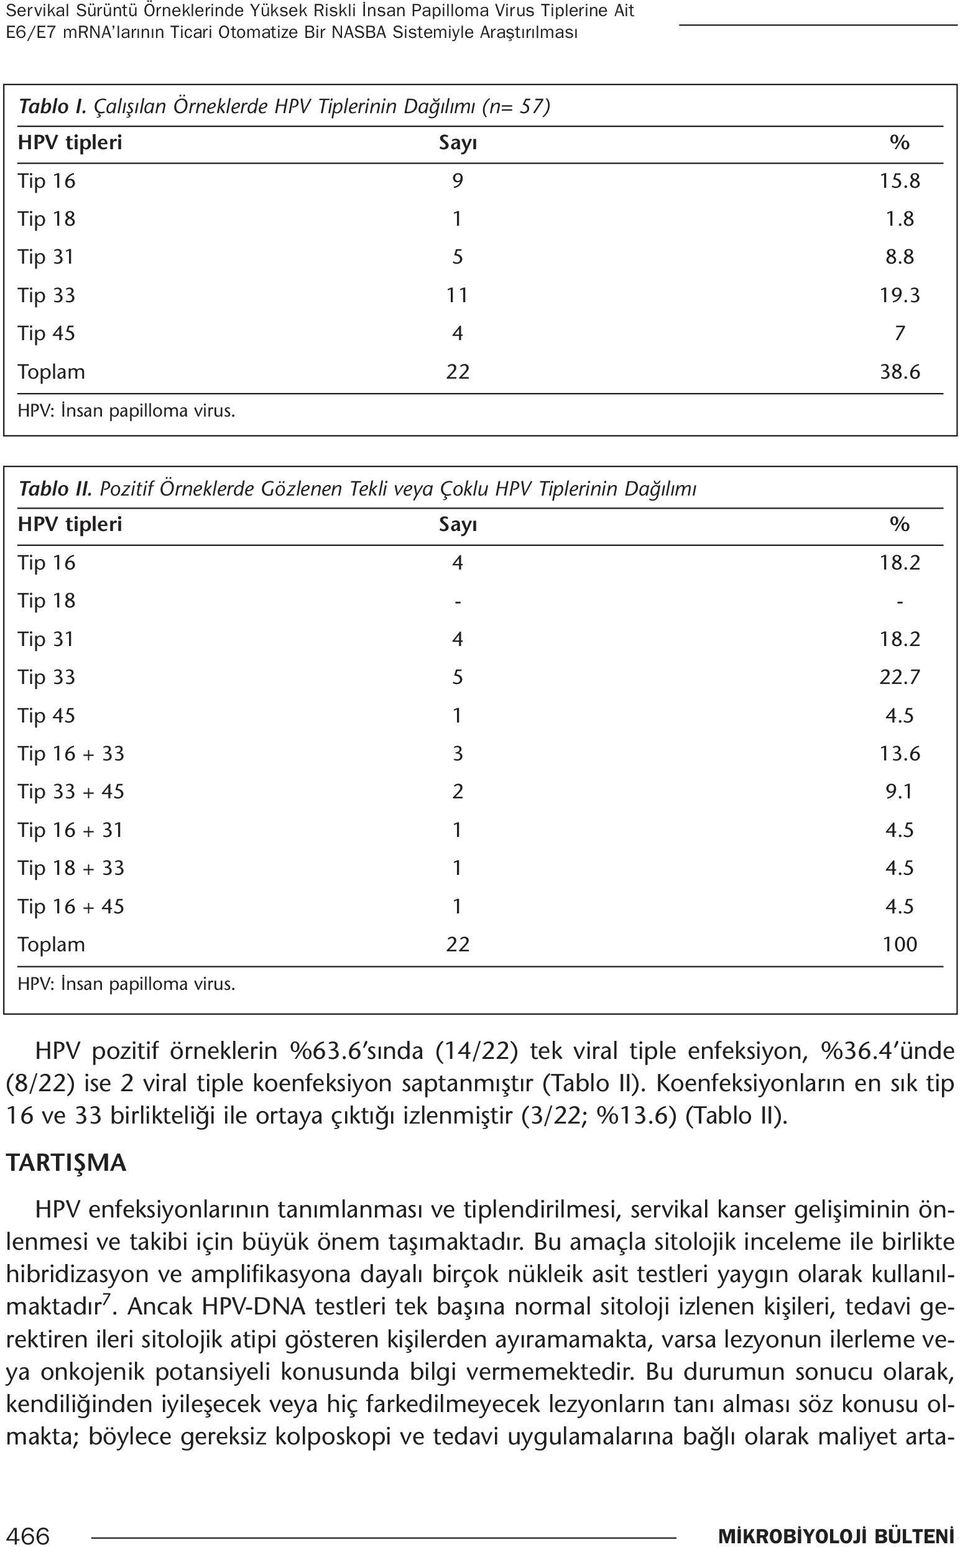 Pozitif Örneklerde Gözlenen Tekli veya Çoklu HPV Tiplerinin Dağılımı HPV tipleri Sayı % Tip 16 4 18.2 Tip 18 - - Tip 31 4 18.2 Tip 33 5 22.7 Tip 45 1 4.5 Tip 16 + 33 3 13.6 Tip 33 + 45 2 9.